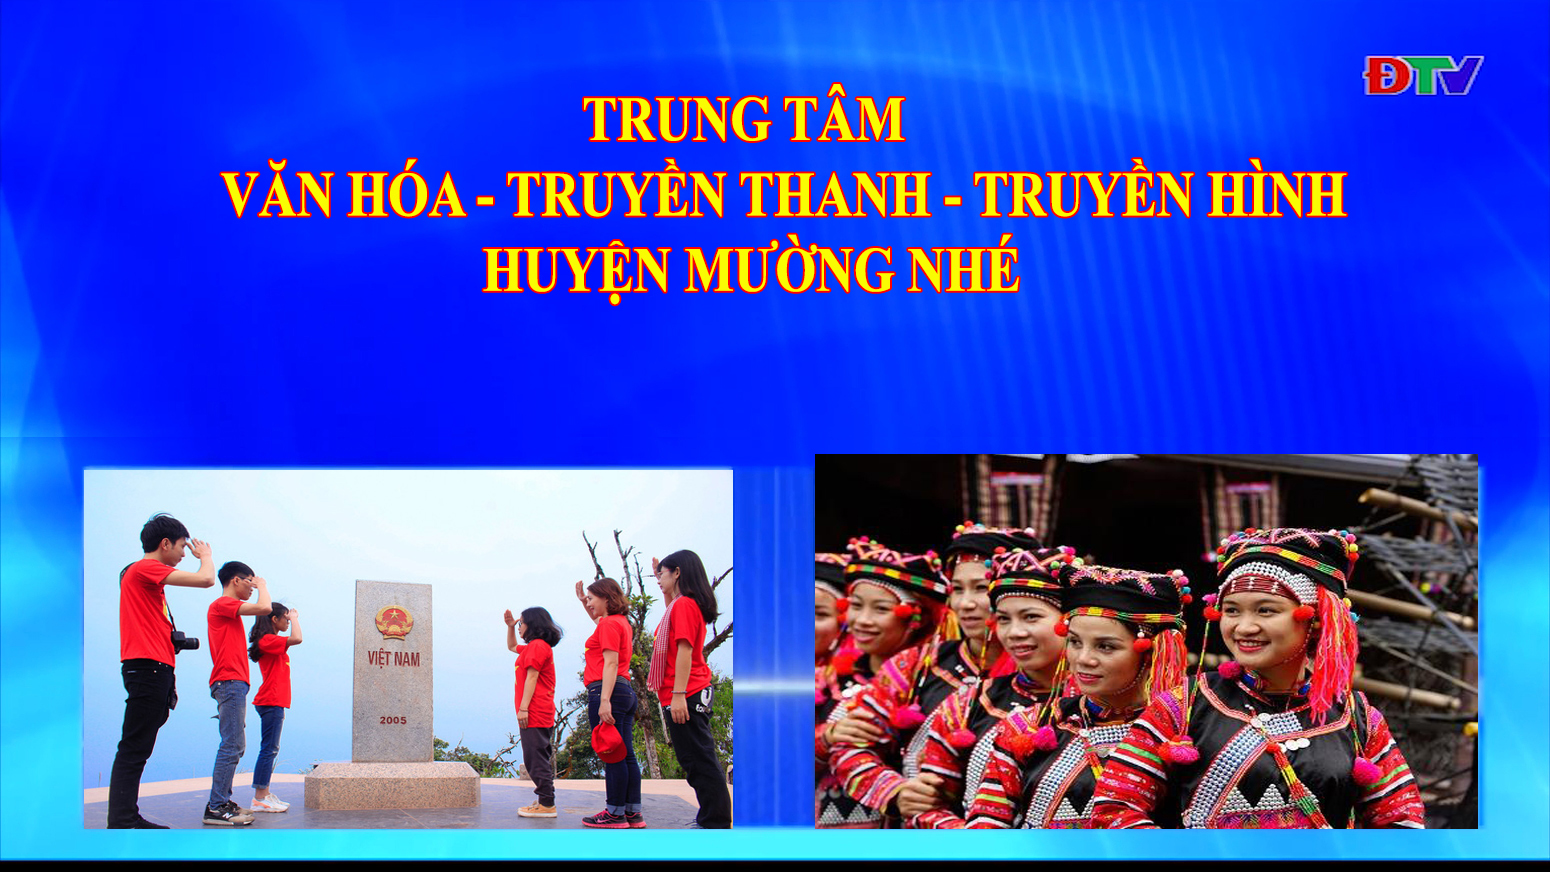 Trung tâm Văn hóa Truyền thanh Truyền hình huyện Mường Nhé (Ngày 11-6-2020)